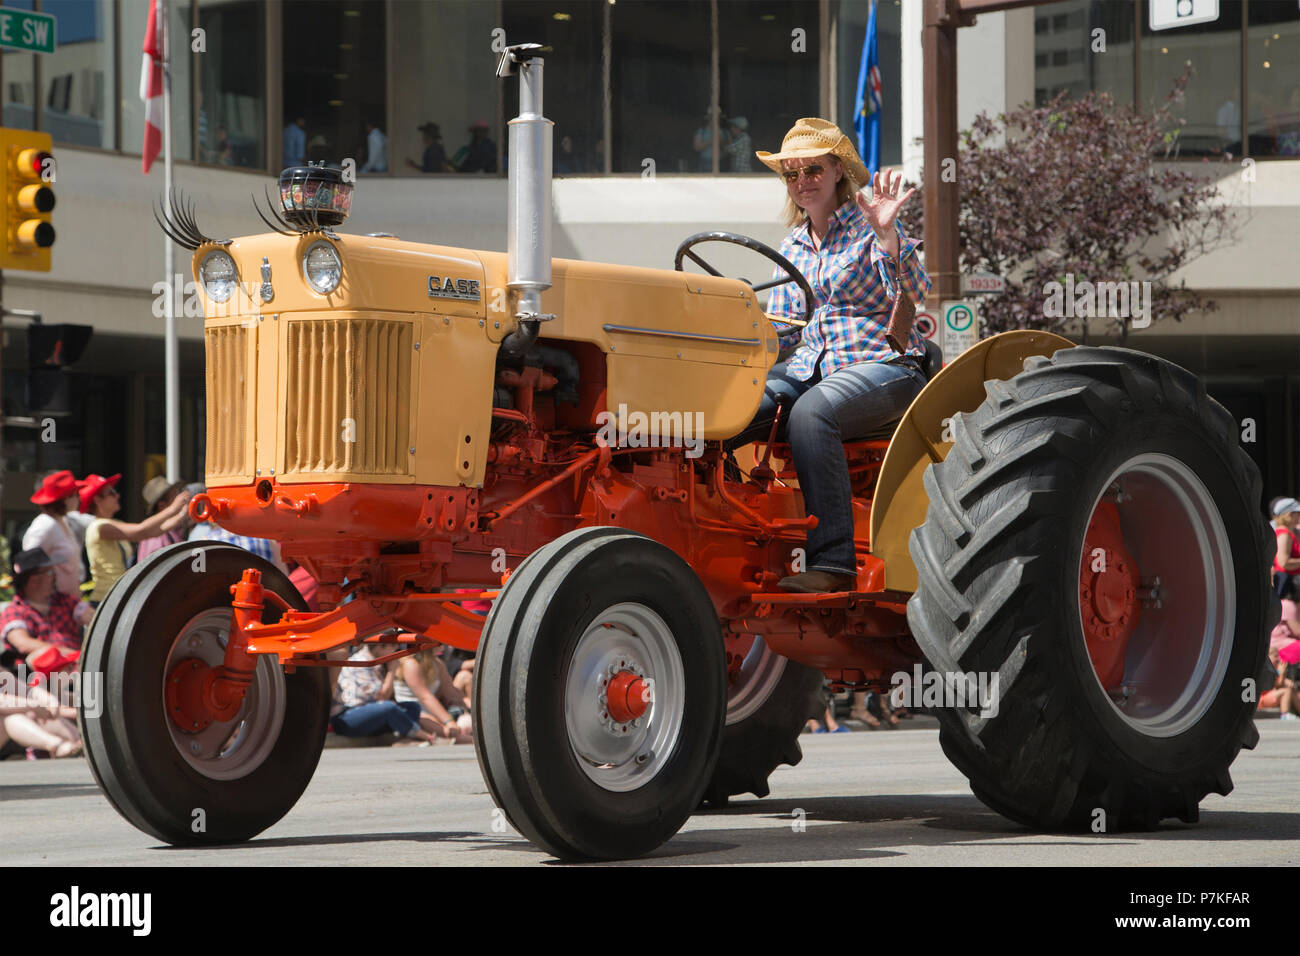 Femme conduit un tracteur d'époque au Calgary Stampede Parade. La parade dans le centre-ville fait chaque année le début du Stampede de Calgary. Rosanne Tackaberry/Alamy Live News Banque D'Images